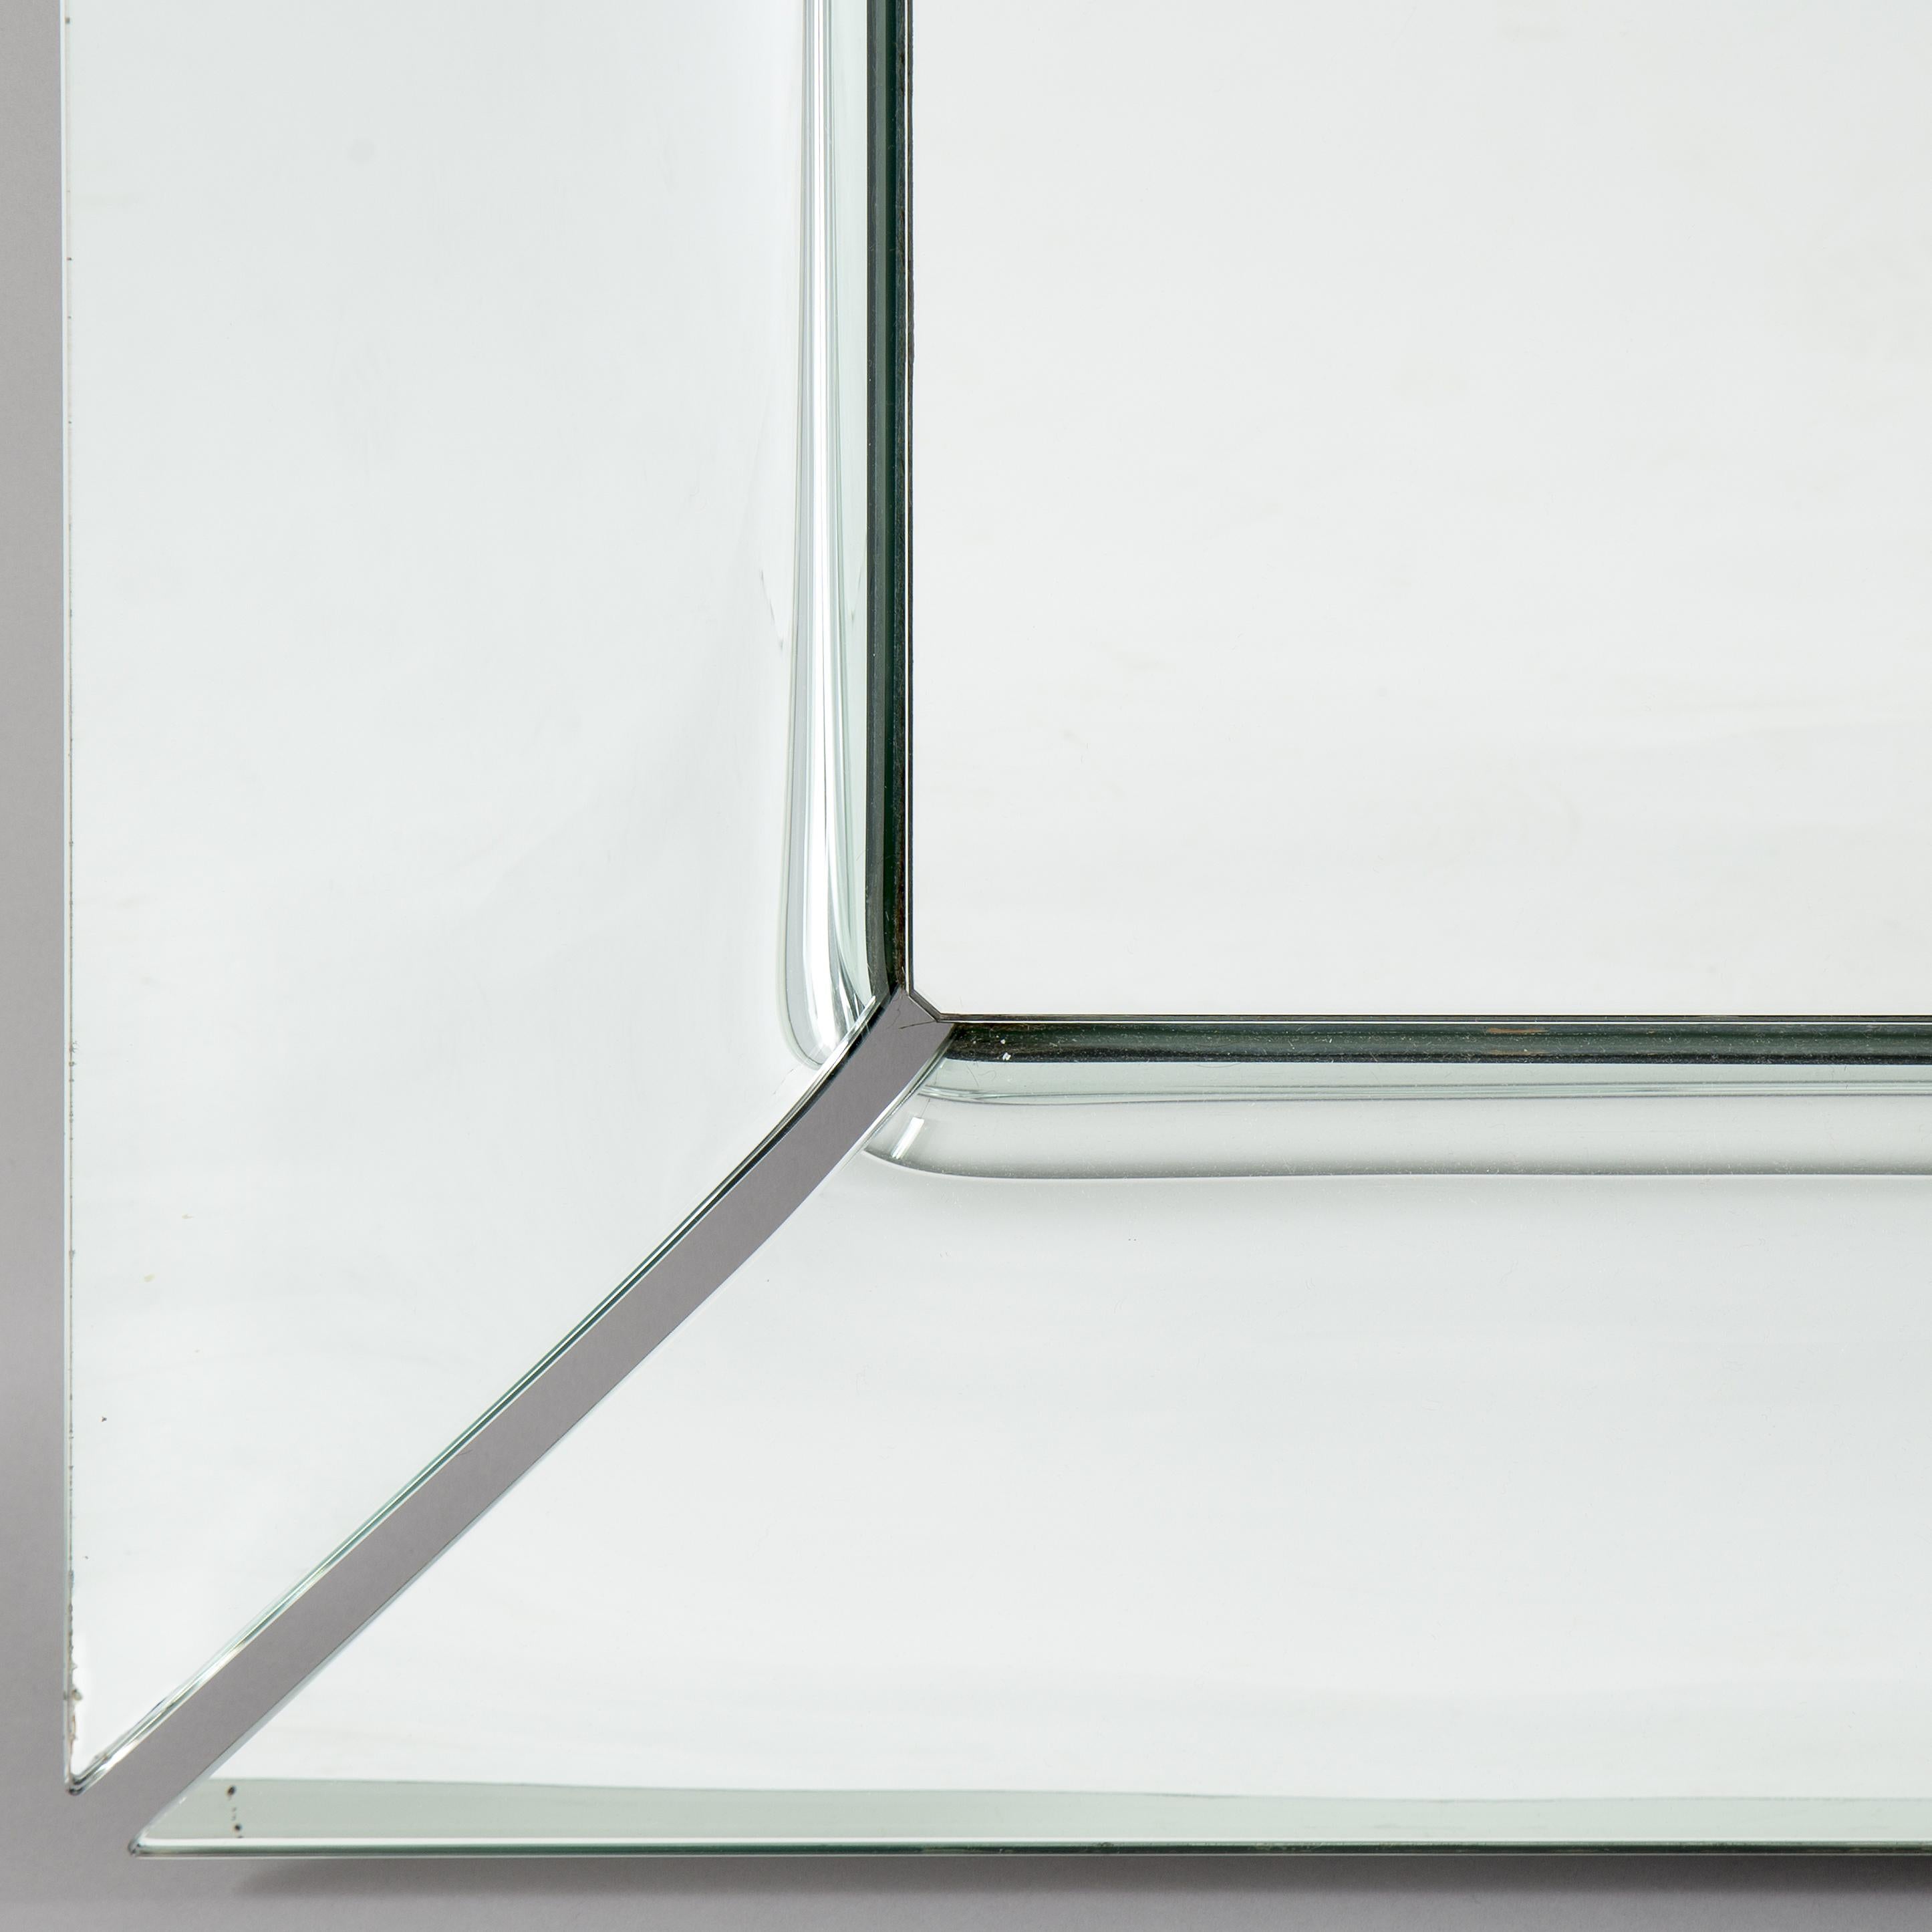 Miroir autoportant ou miroir suspendu en verre bombé de 6 mm d'épaisseur, composé de quatre éléments bombés séparés et argentés. Egalement disponible avec une finition en verre semi-réfléchissant titane ou en argenté.
 